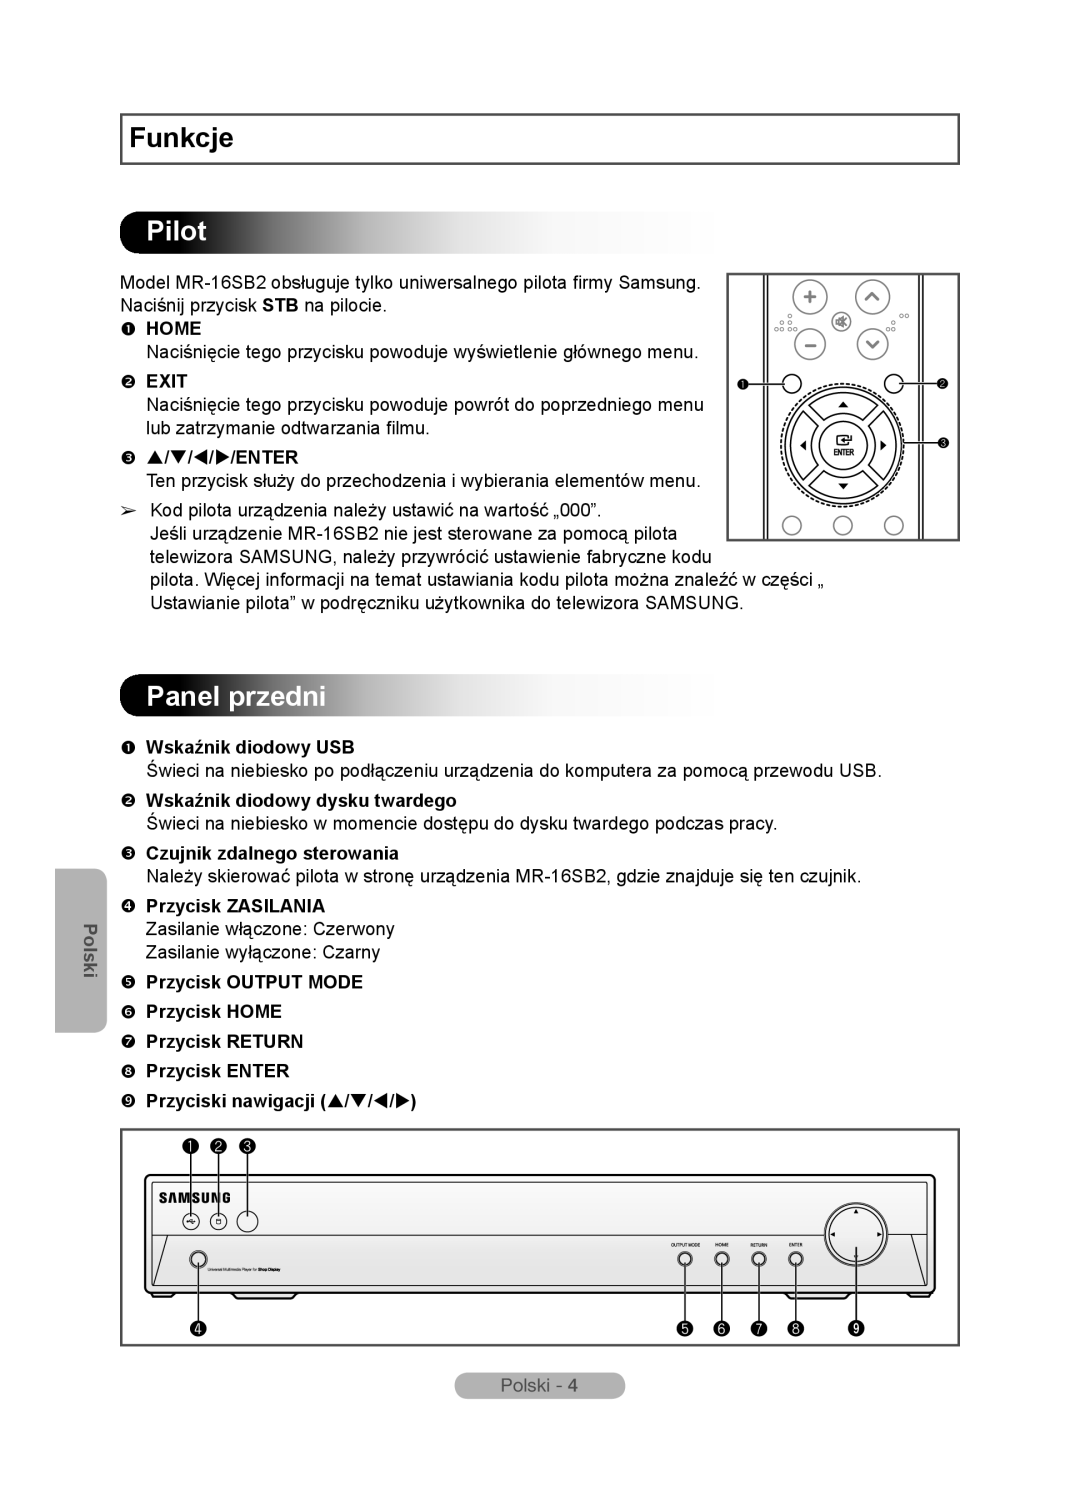 Samsung MR-16SB2 Pilot, Panel przedni,  Wskaźnik diodowy USB,  Wskaźnik diodowy dysku twardego, Funkcje,  Home,  Exit 